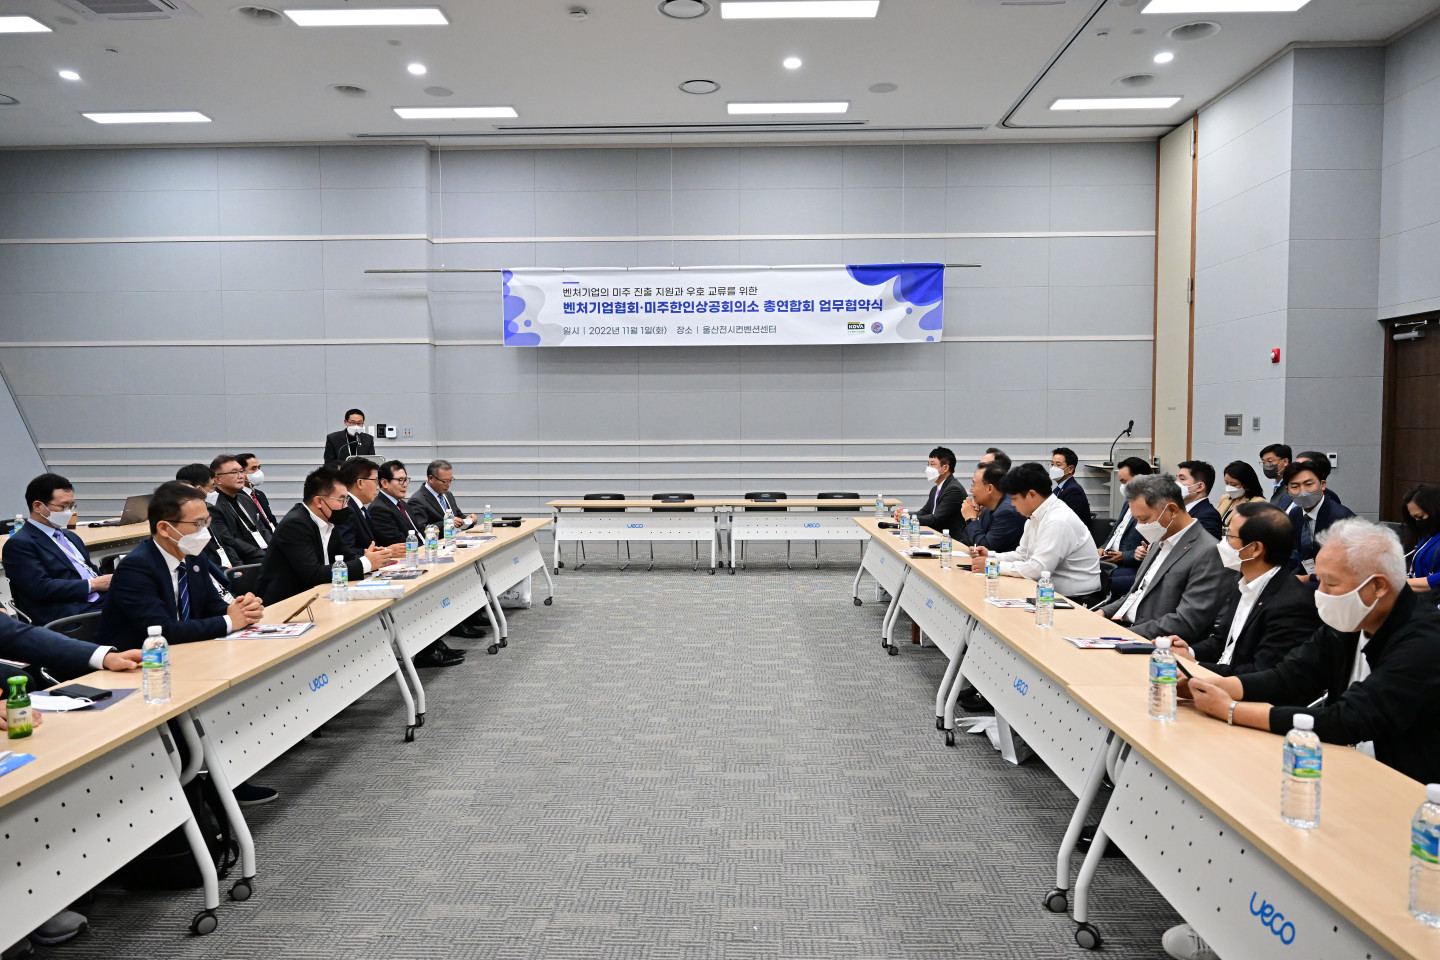 Церемония заключения делового соглашения между Корейско-американской торгово-промышленной палатой и Ассоциацией венчурного бизнеса